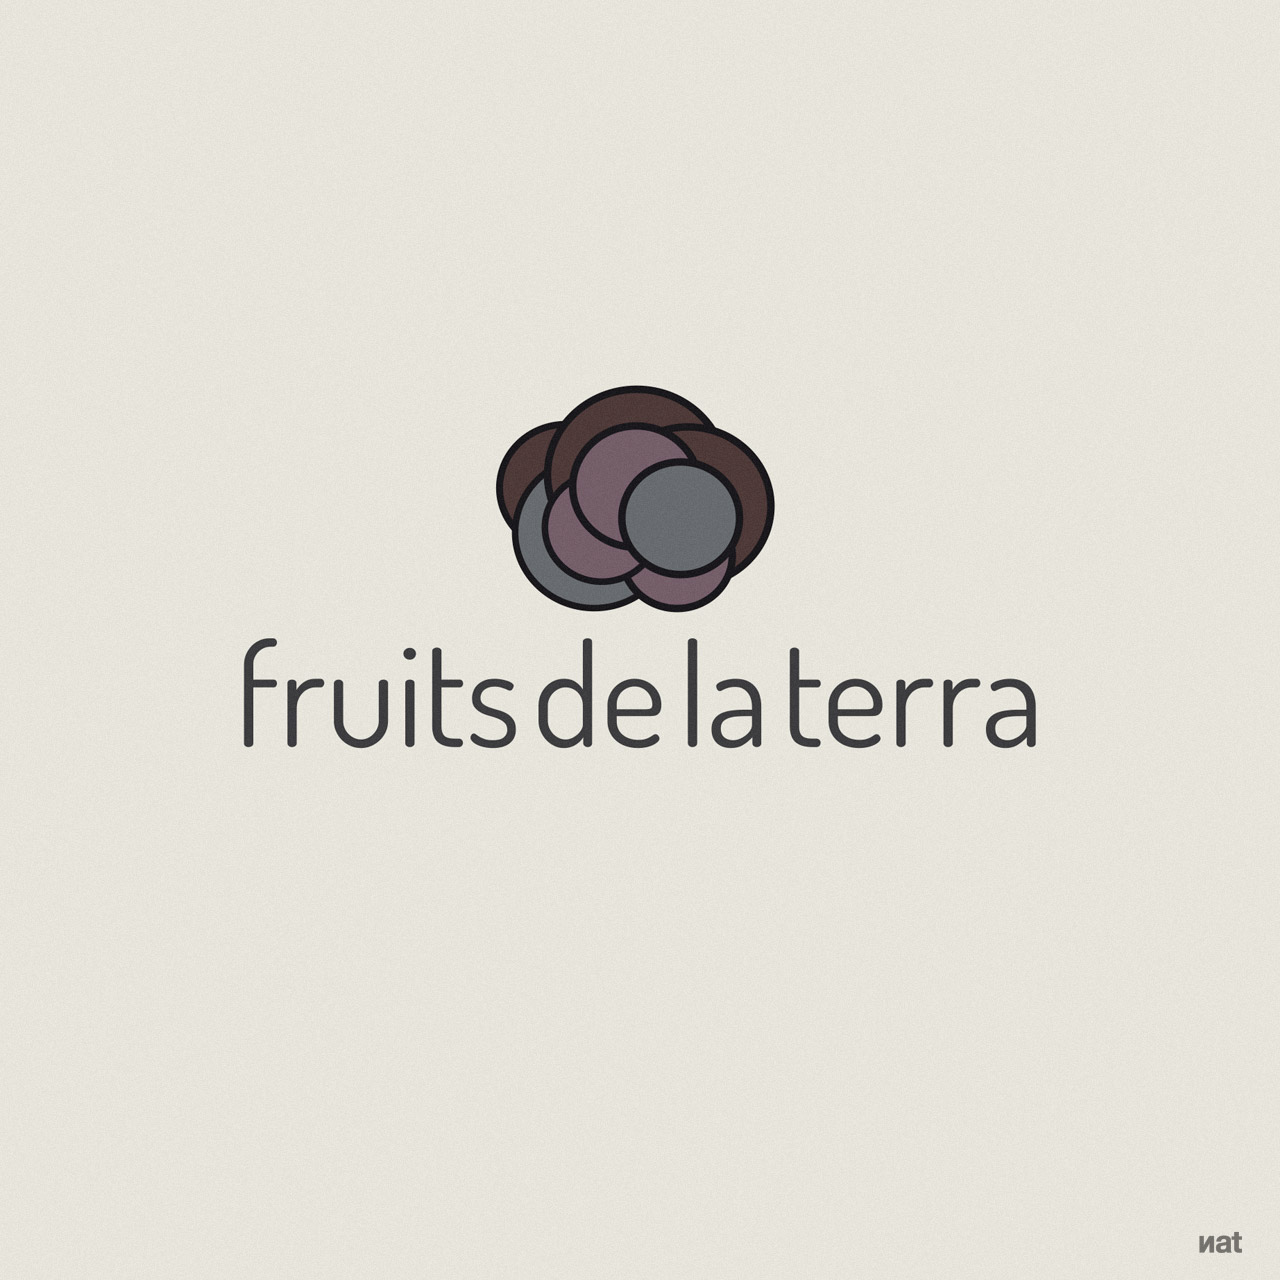 Identidad corporativa desarrollada por Nat Estudi para el proyecto empresarial 'Fruits de la Terra'.